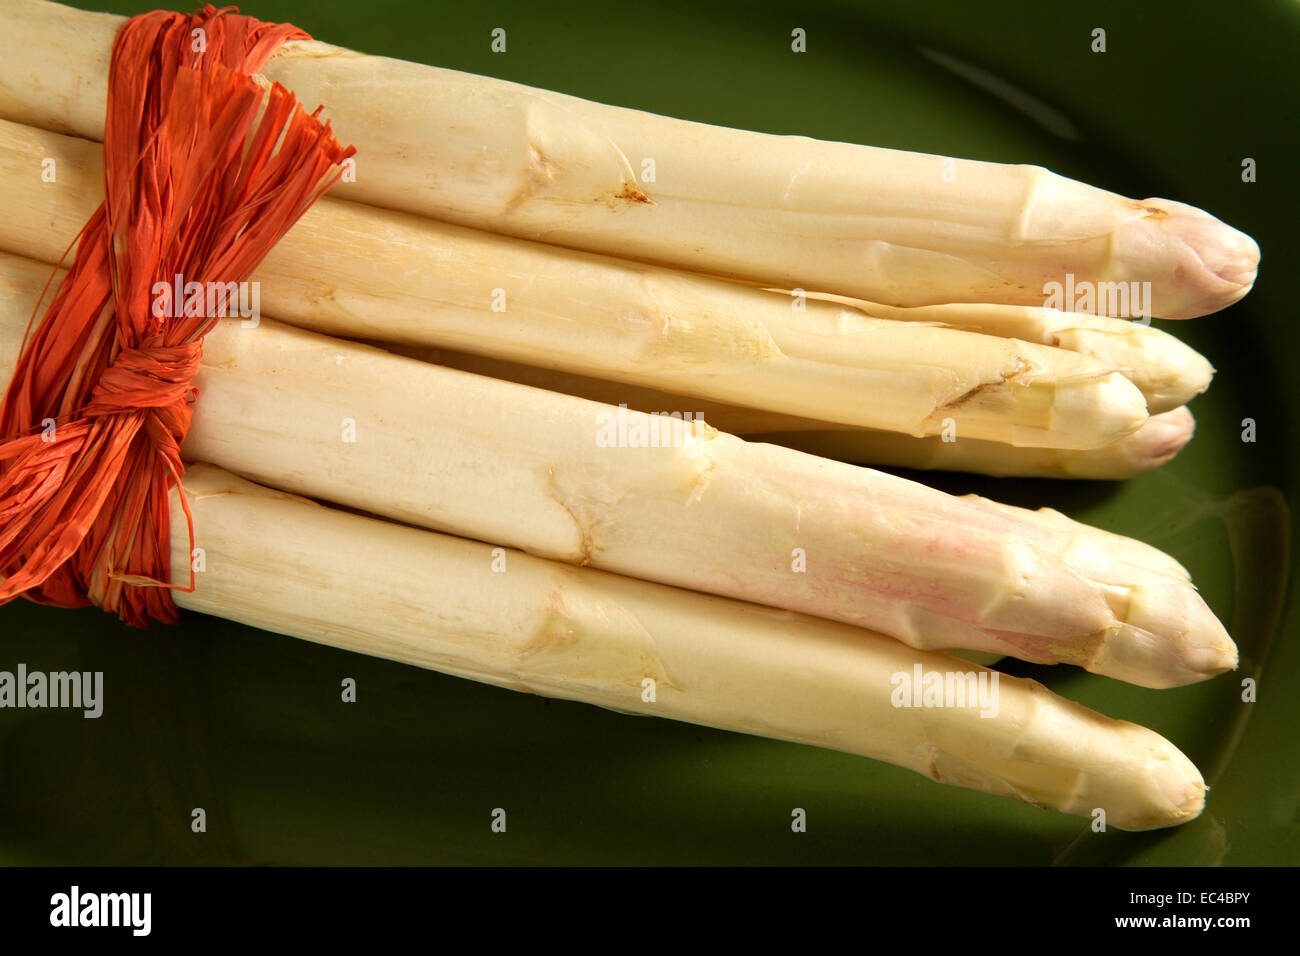 asparagus on a plate Stock Photo